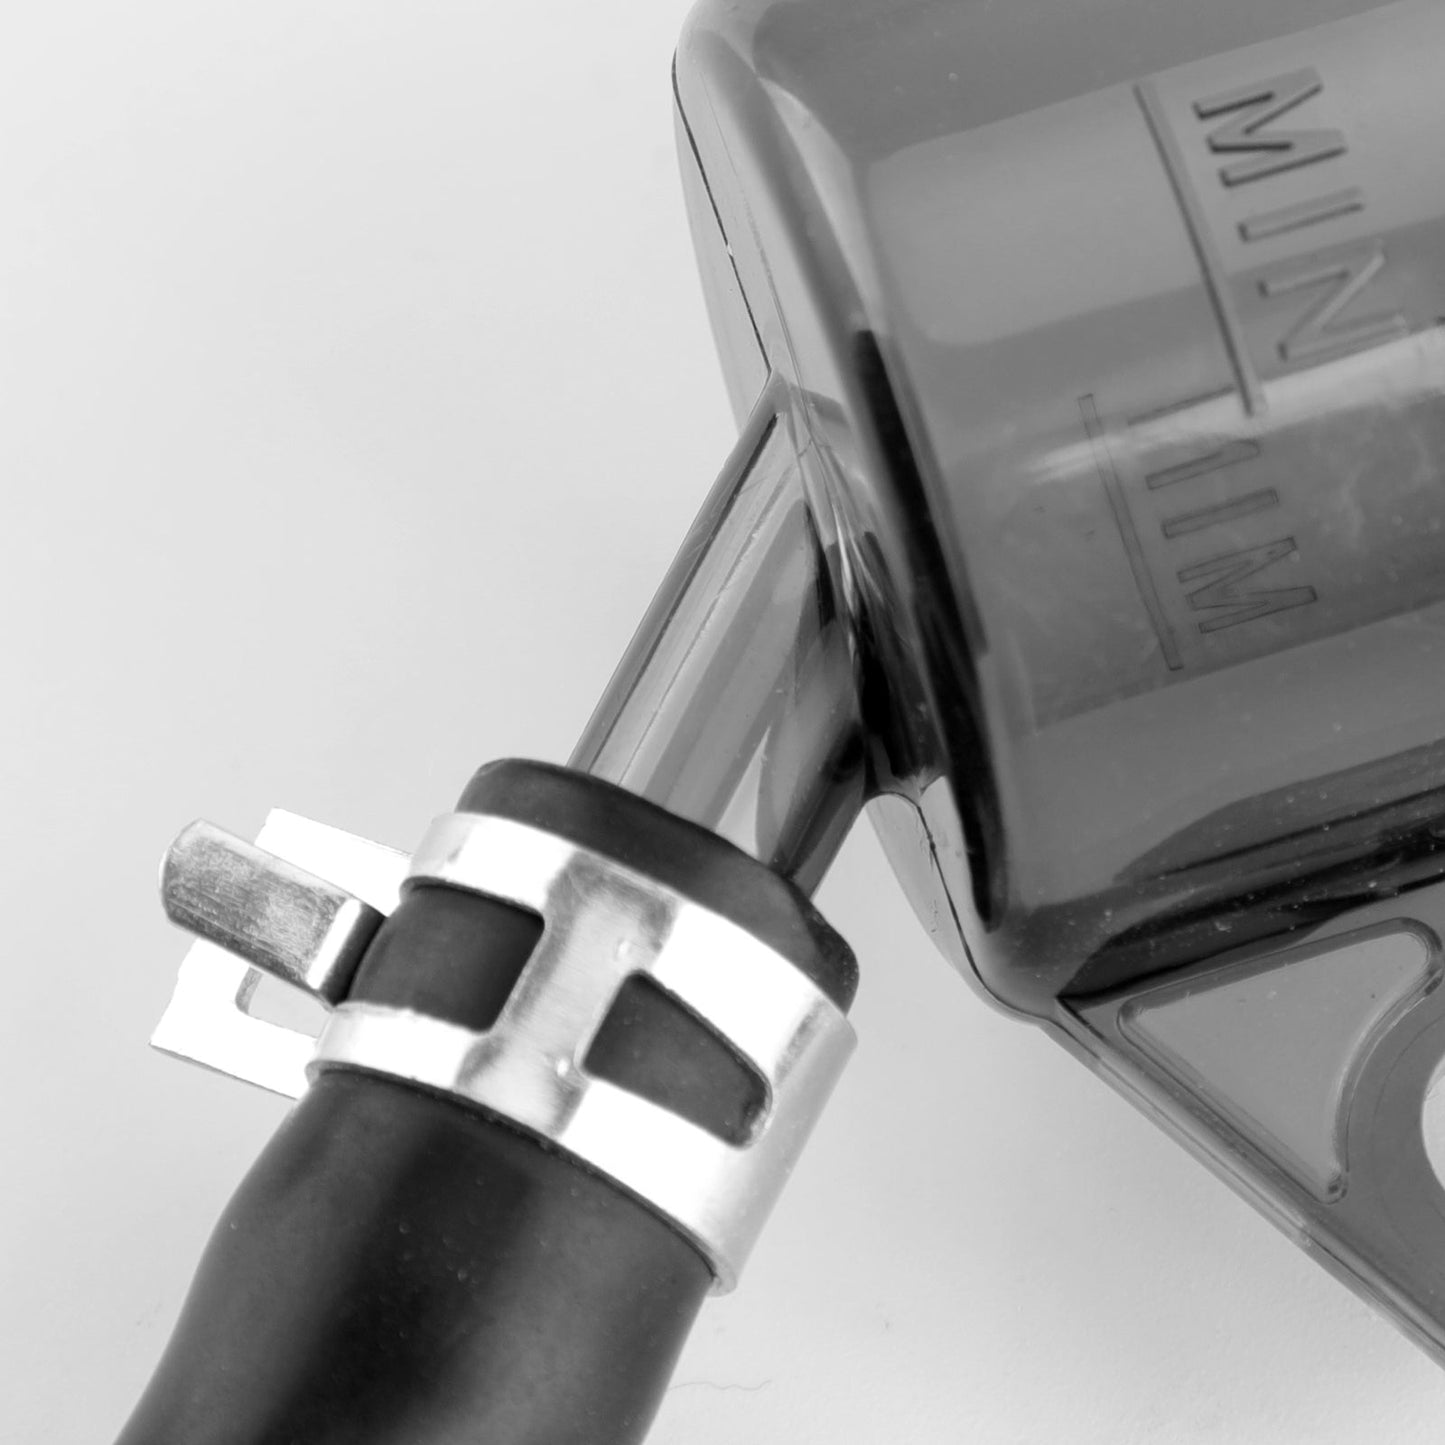 Le migliori offerte per Universal Moto Rear Brake Clutch Master Cylinder Fluid Reservoir Oil Tank Cap Generic sono su ✓ Confronta prezzi e caratteristiche di prodotti nuovi e usati ✓ Molti articoli con consegna gratis!